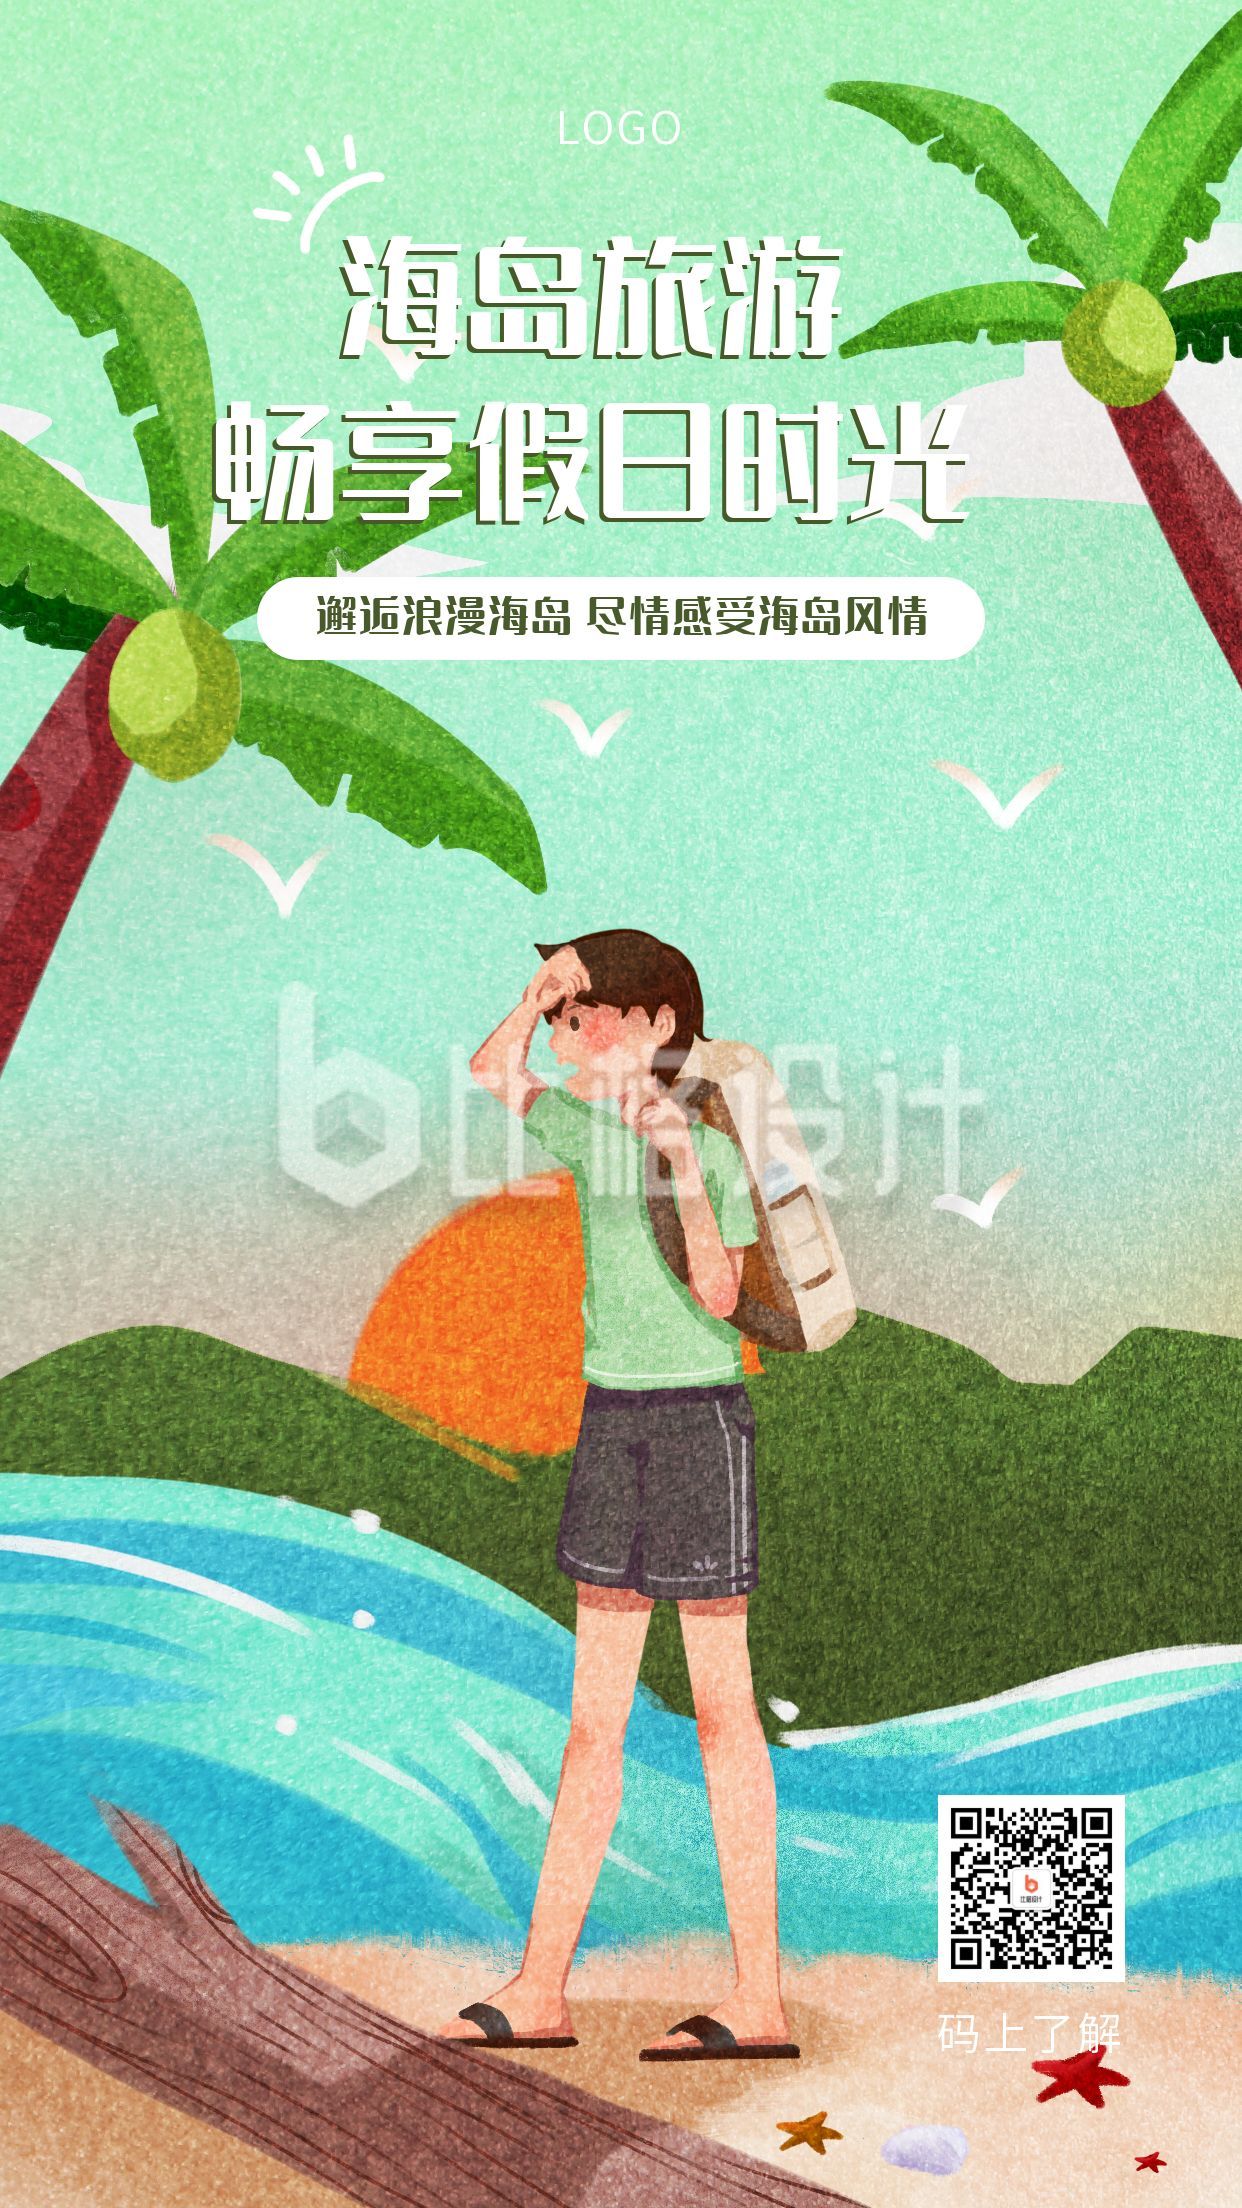 手绘清新插画国庆假期海岛旅游假日时光手机海报